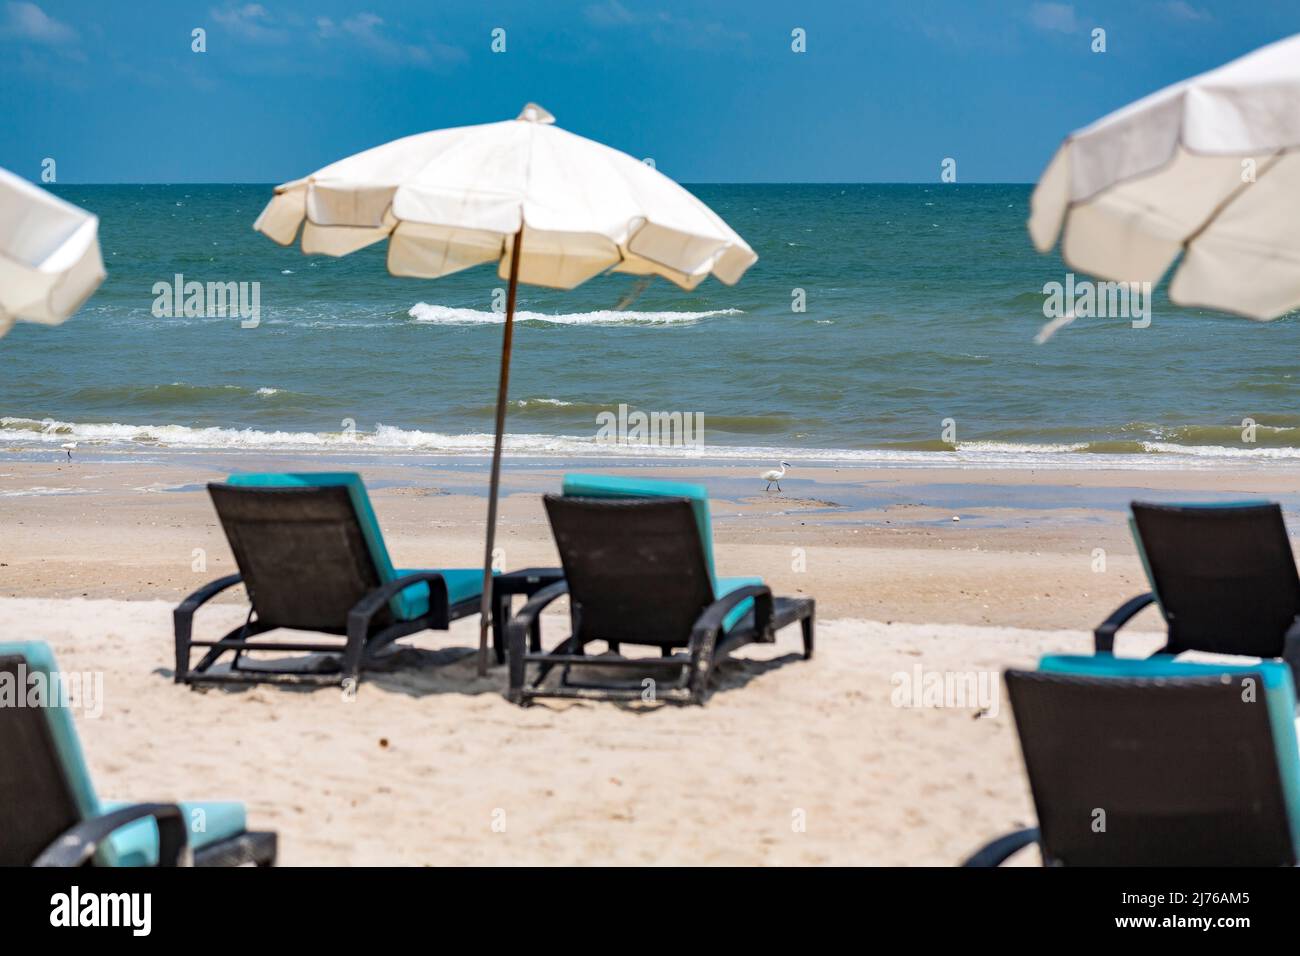 Egret blanc, (Casmerodius albus), chaises longues et parasols sur la plage, complexe hôtelier Dusit Thani, Hua Hin, province de Prachuap Khiri Khan, Thaïlande, Golfe de Thaïlande, Asie Banque D'Images